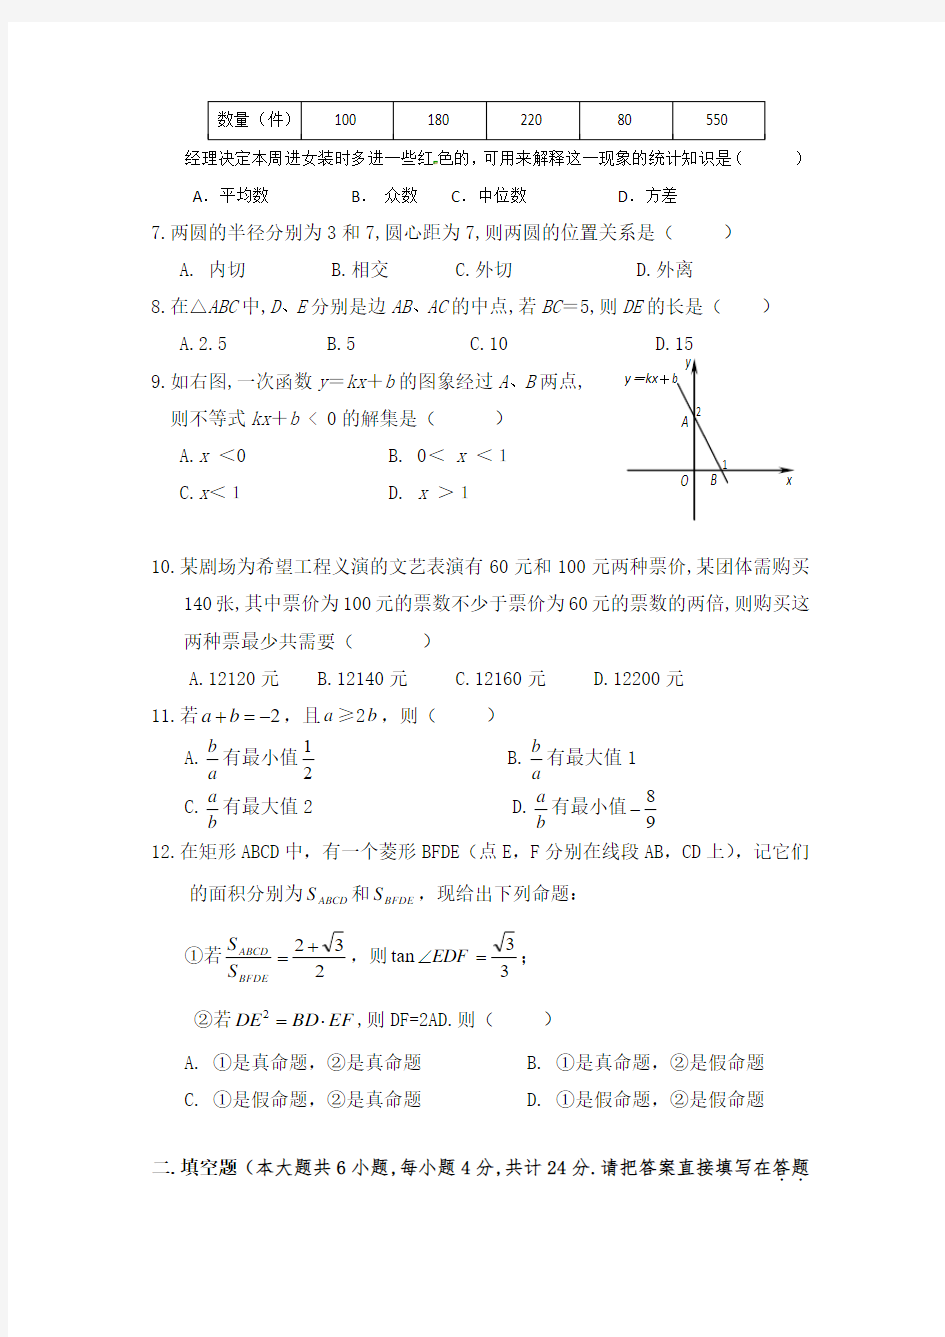 【初升高】北京北京师范大学附属中学2020中考提前自主招生数学模拟试卷(9套)附解析